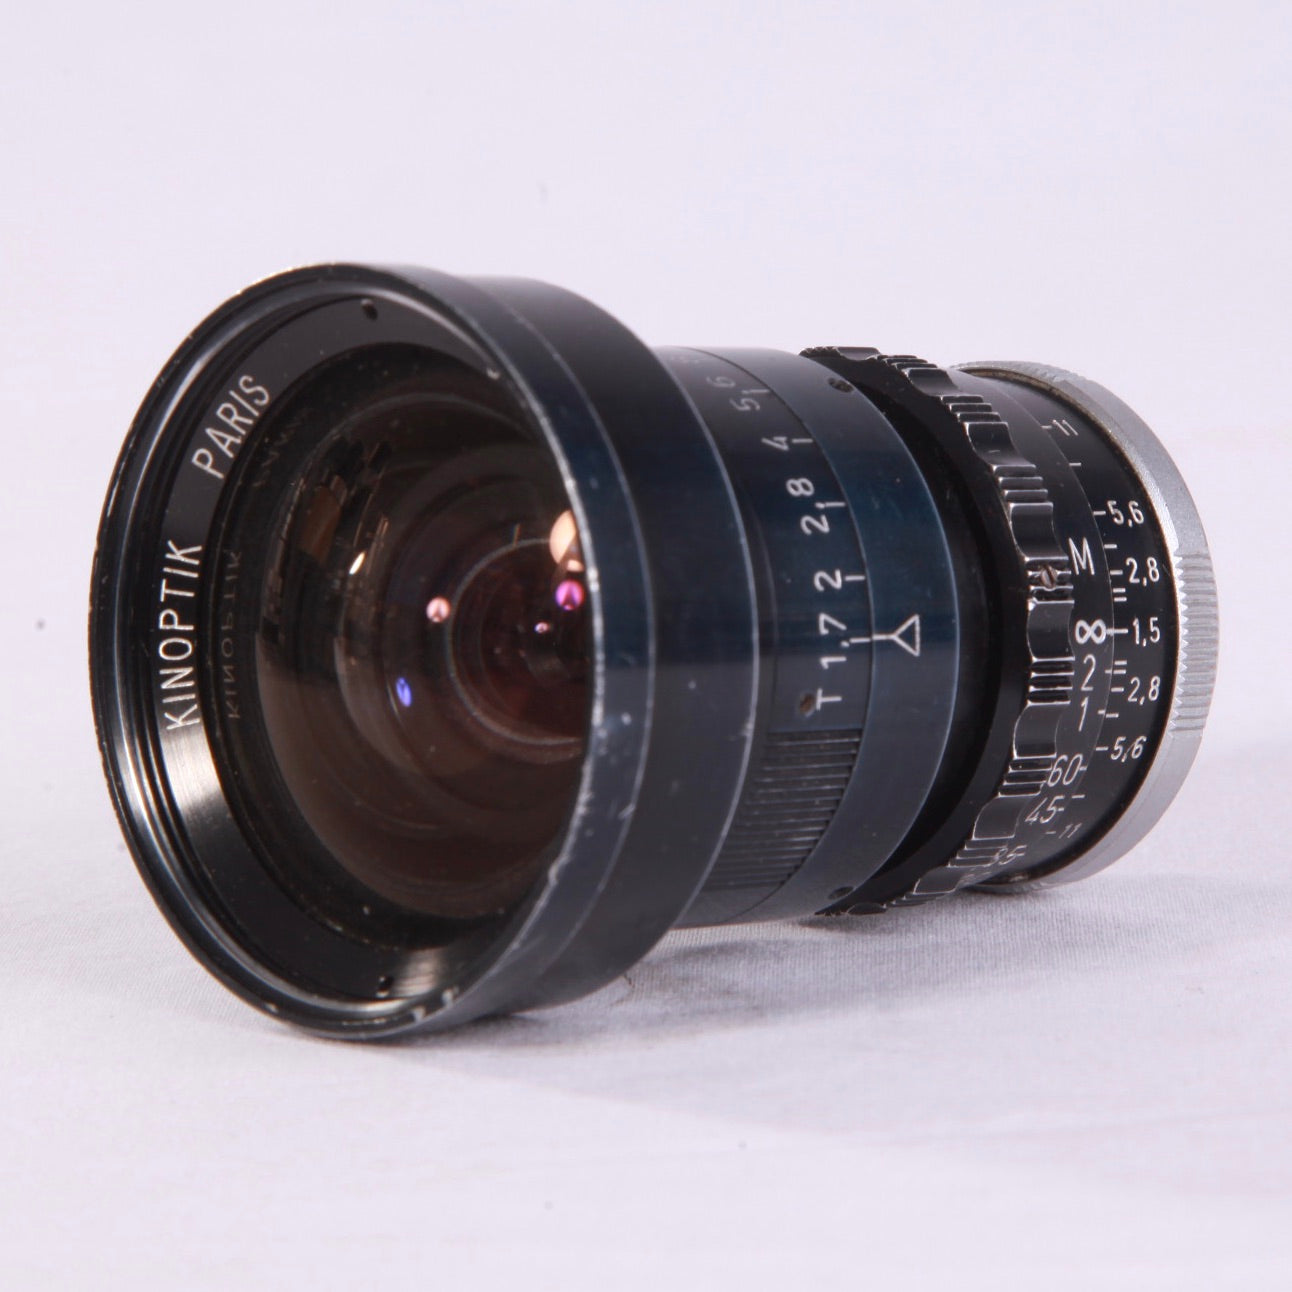 Kinoptik 9mm f1.5 c-mount lens